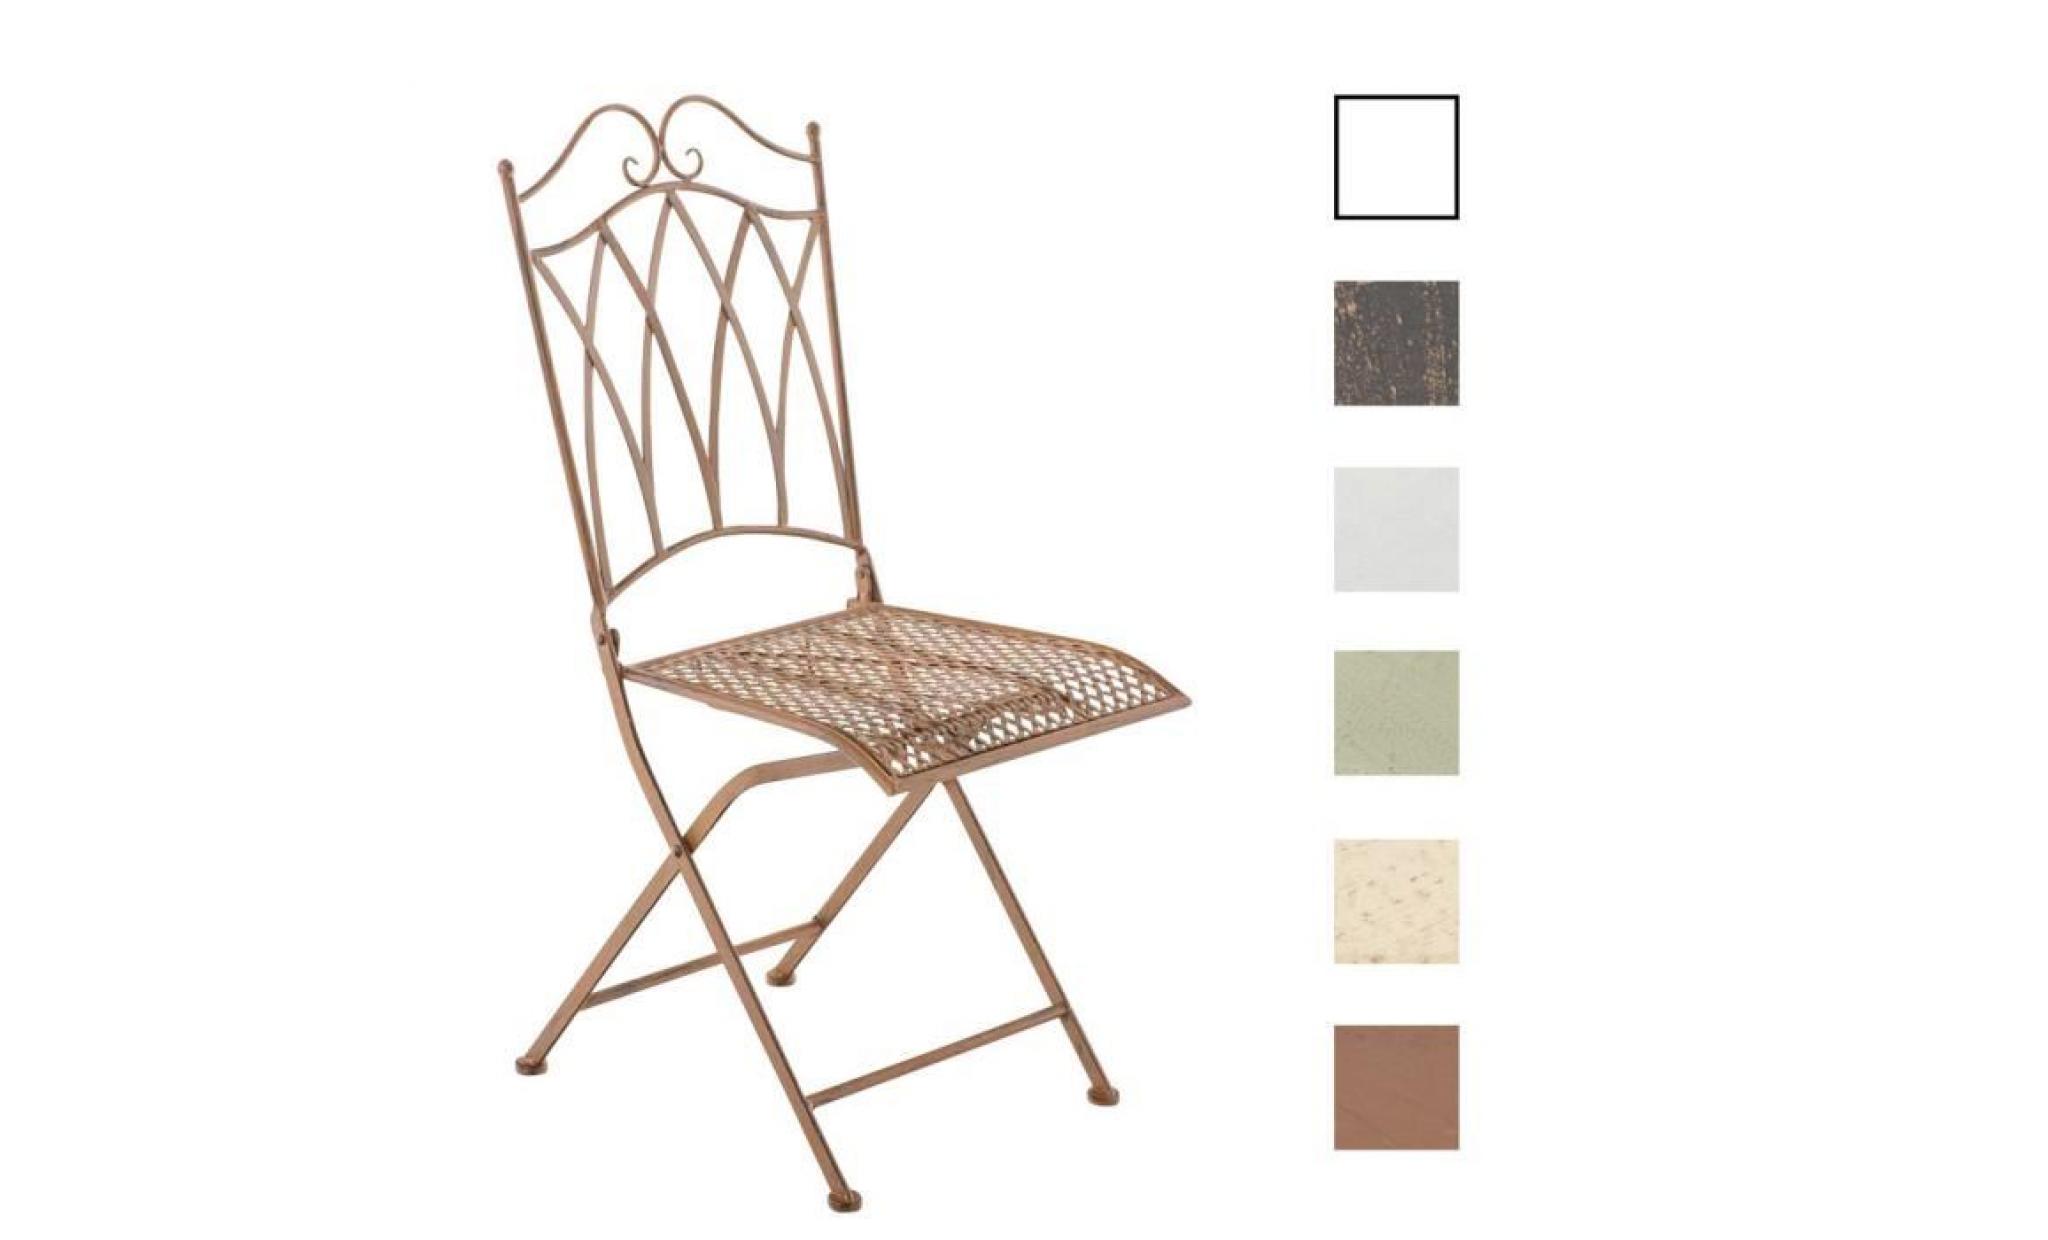 clp chaise nostalgique pliable lunis, chaise fer forgé, chaise pliante, chaise antique, 6 couleurs au choix 91 cm blanc antique